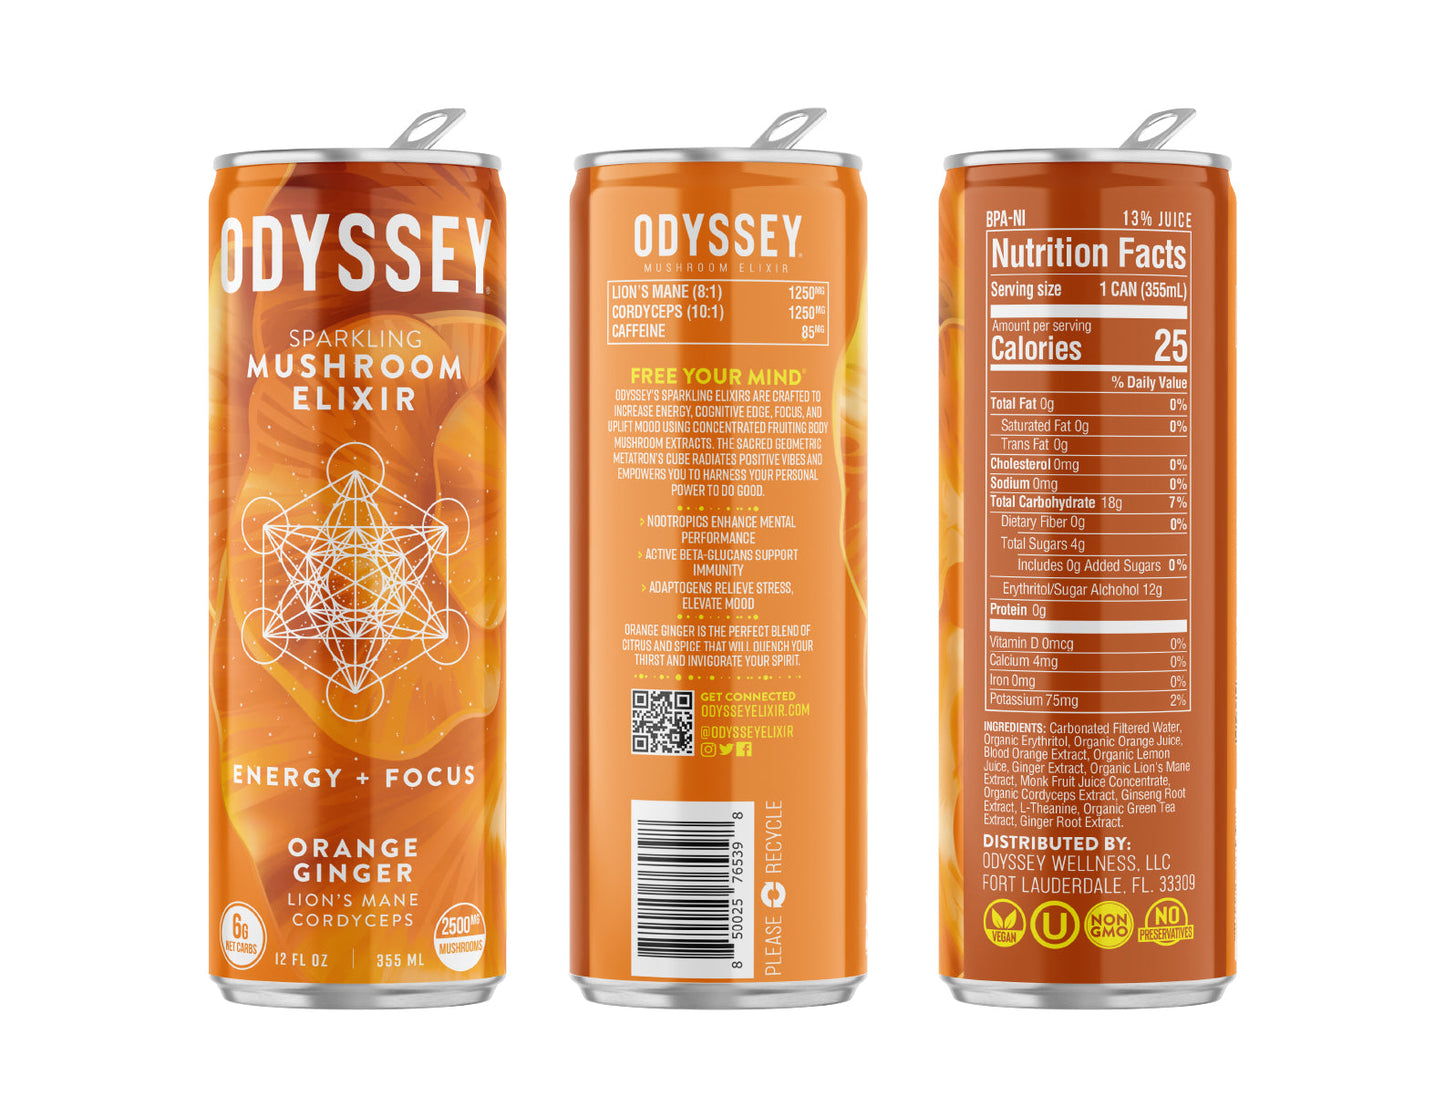 OdysseyElixir - ENERGY + FOCUS - ORANGE GINGER 12-pack